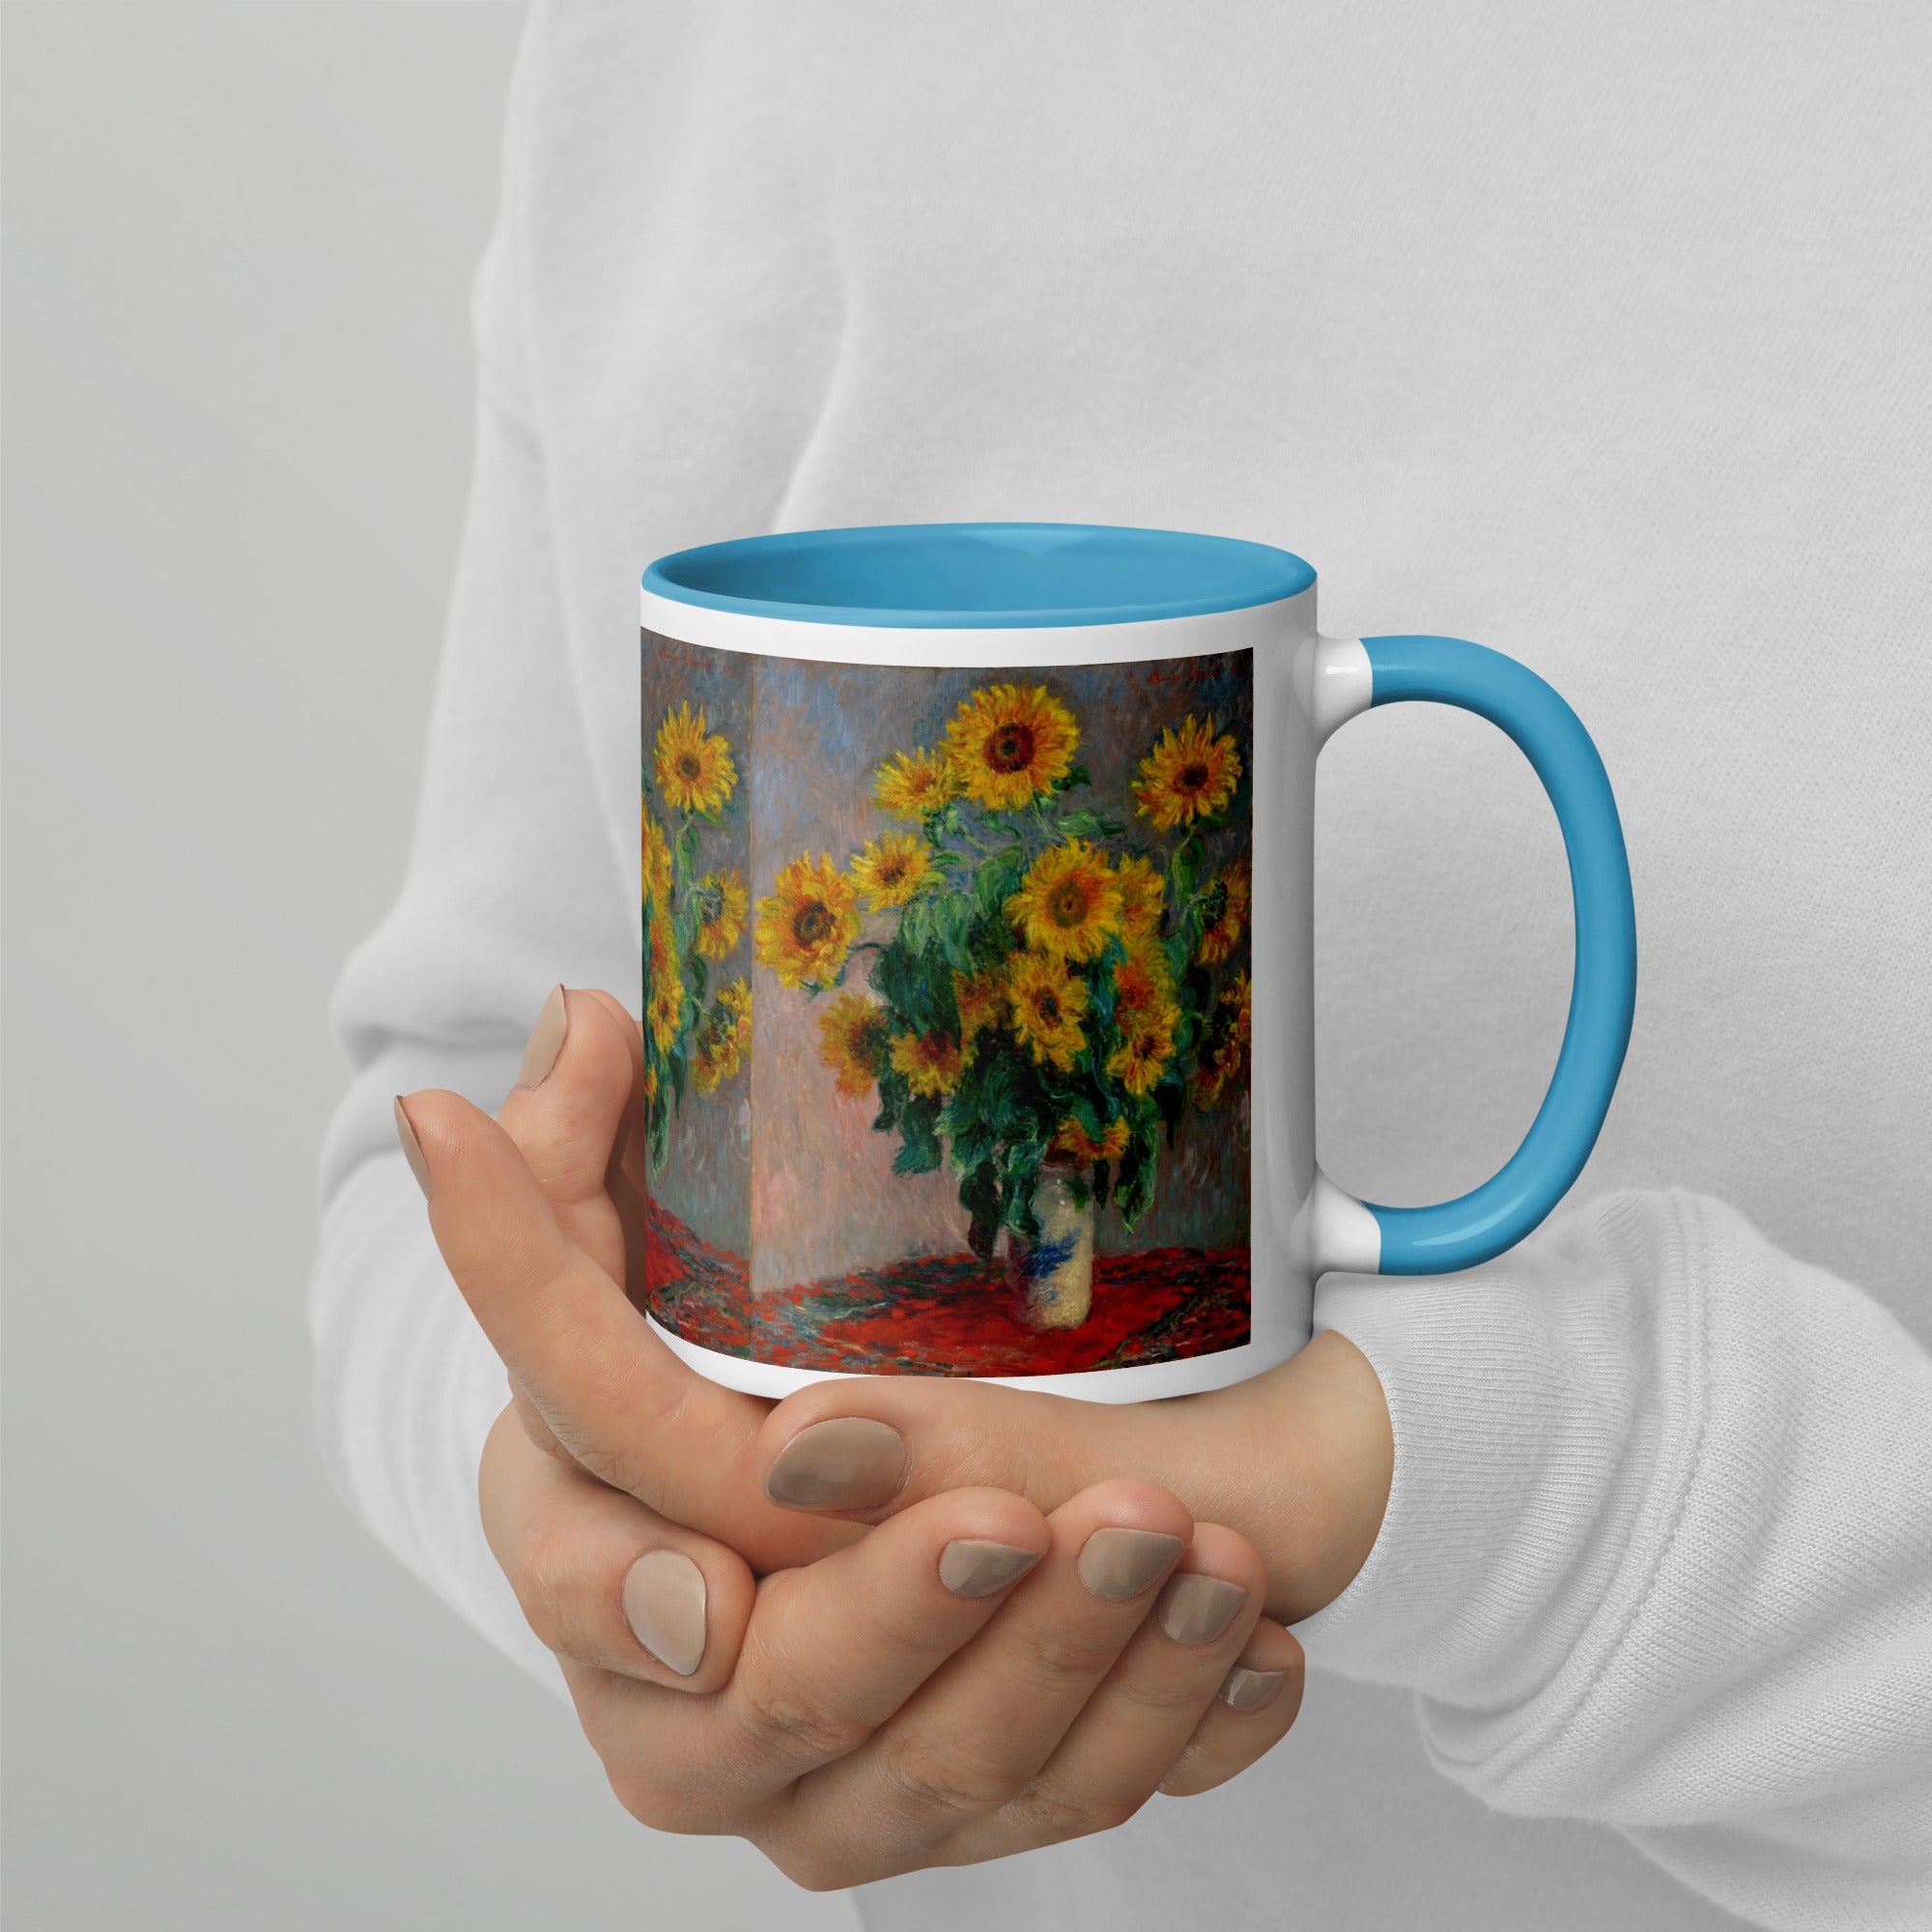 Keramiktasse „Sonnenblumenstrauß“ von Claude Monet, berühmtes Gemälde | Hochwertige Kunsttasse